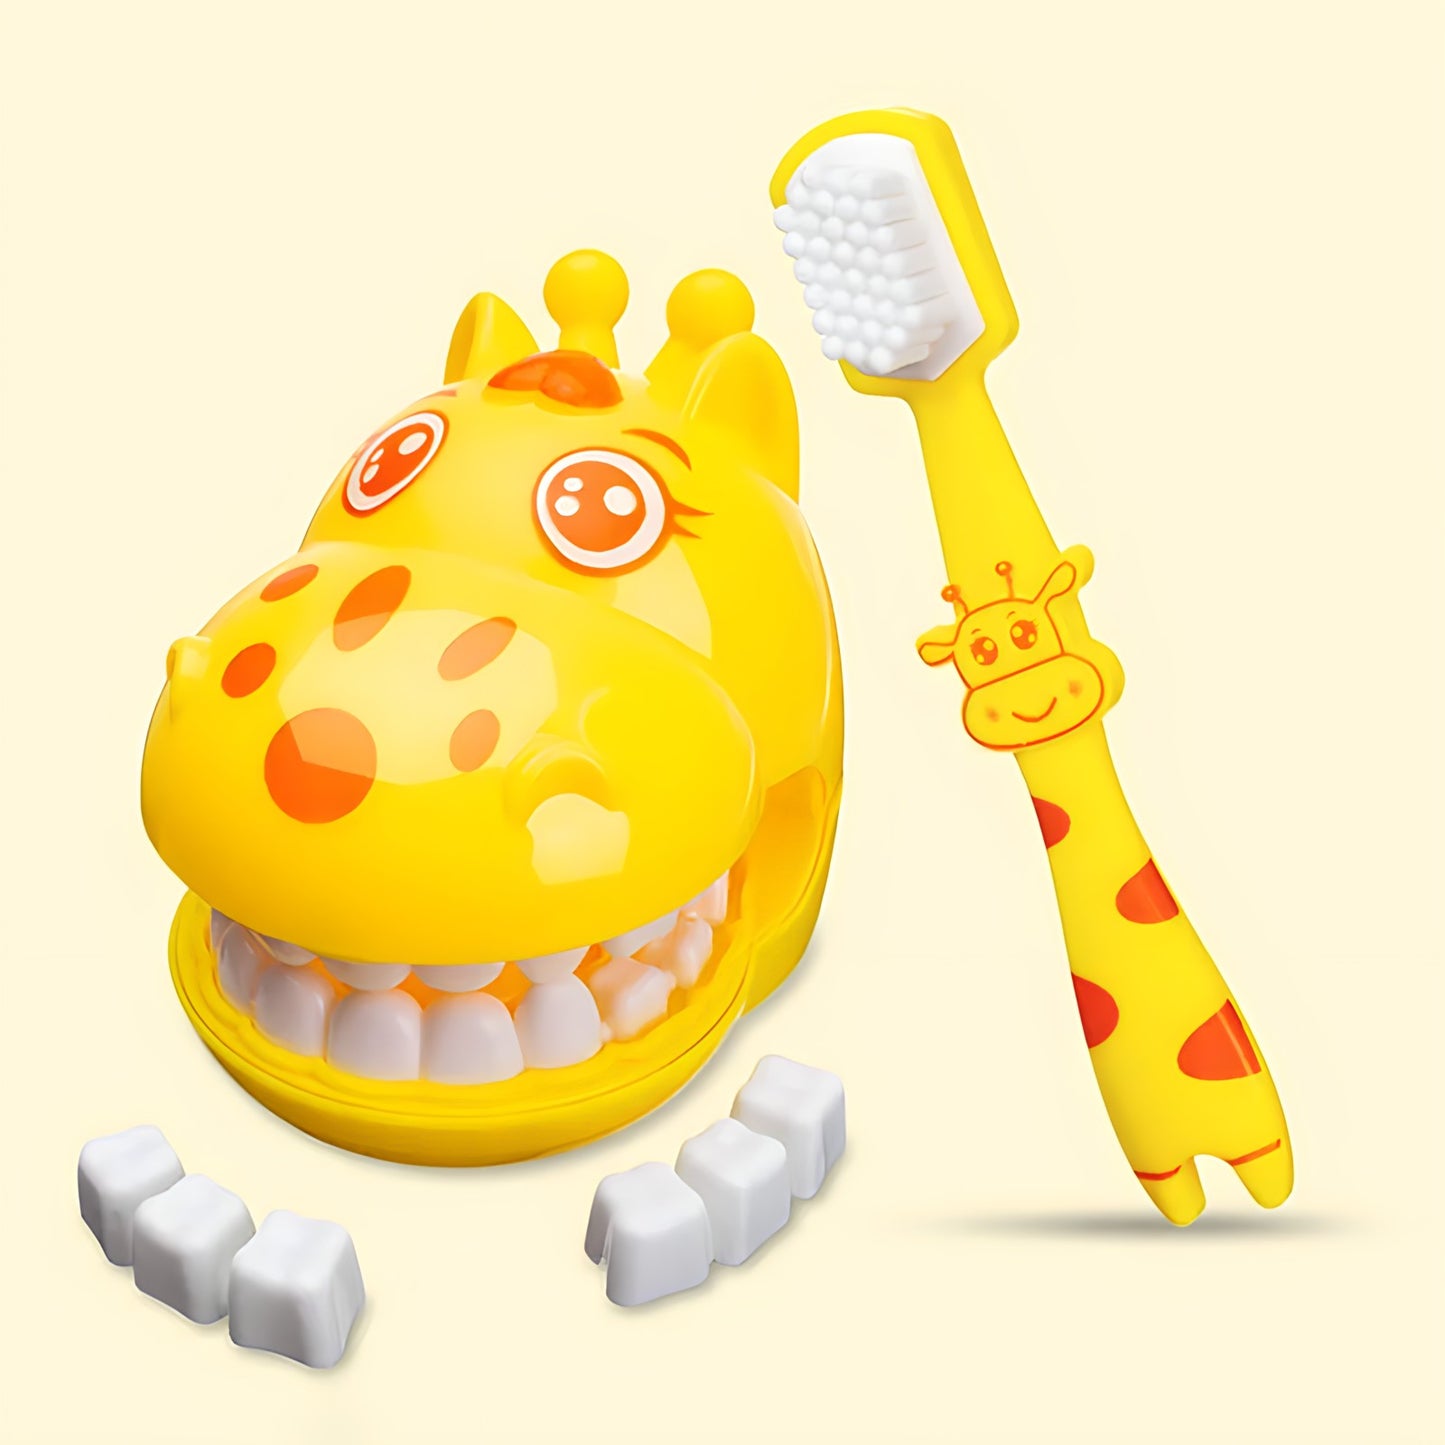 Giraffe Modeling Dental Doctor Toys